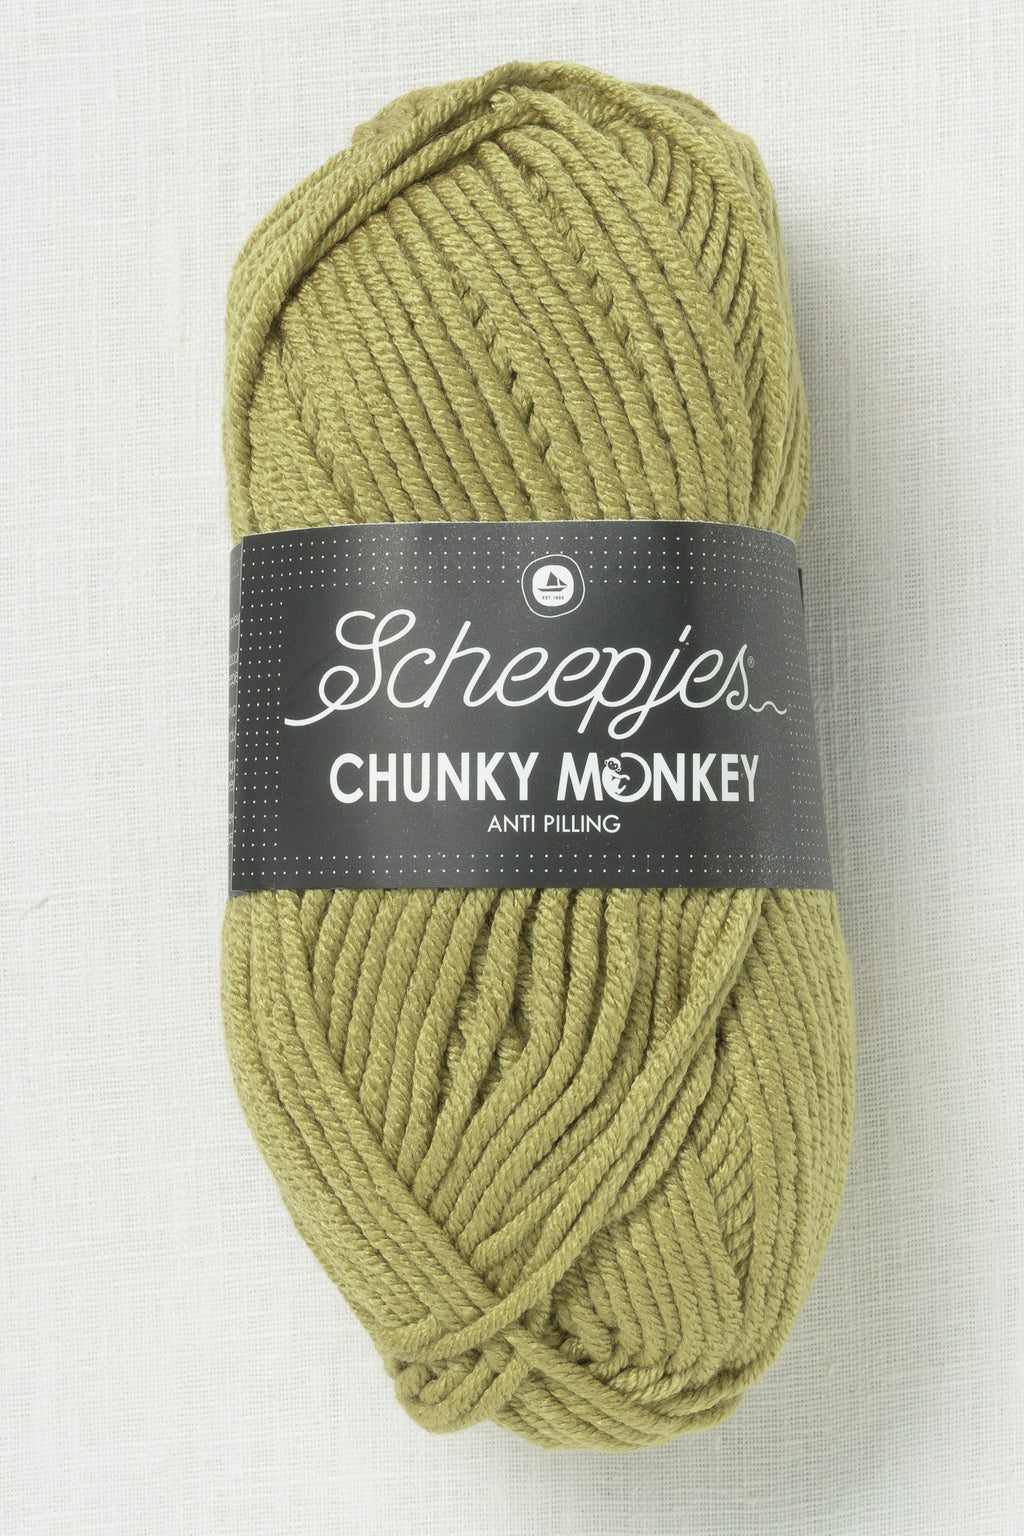 Scheepjes Chunky Monkey 1065 Sage